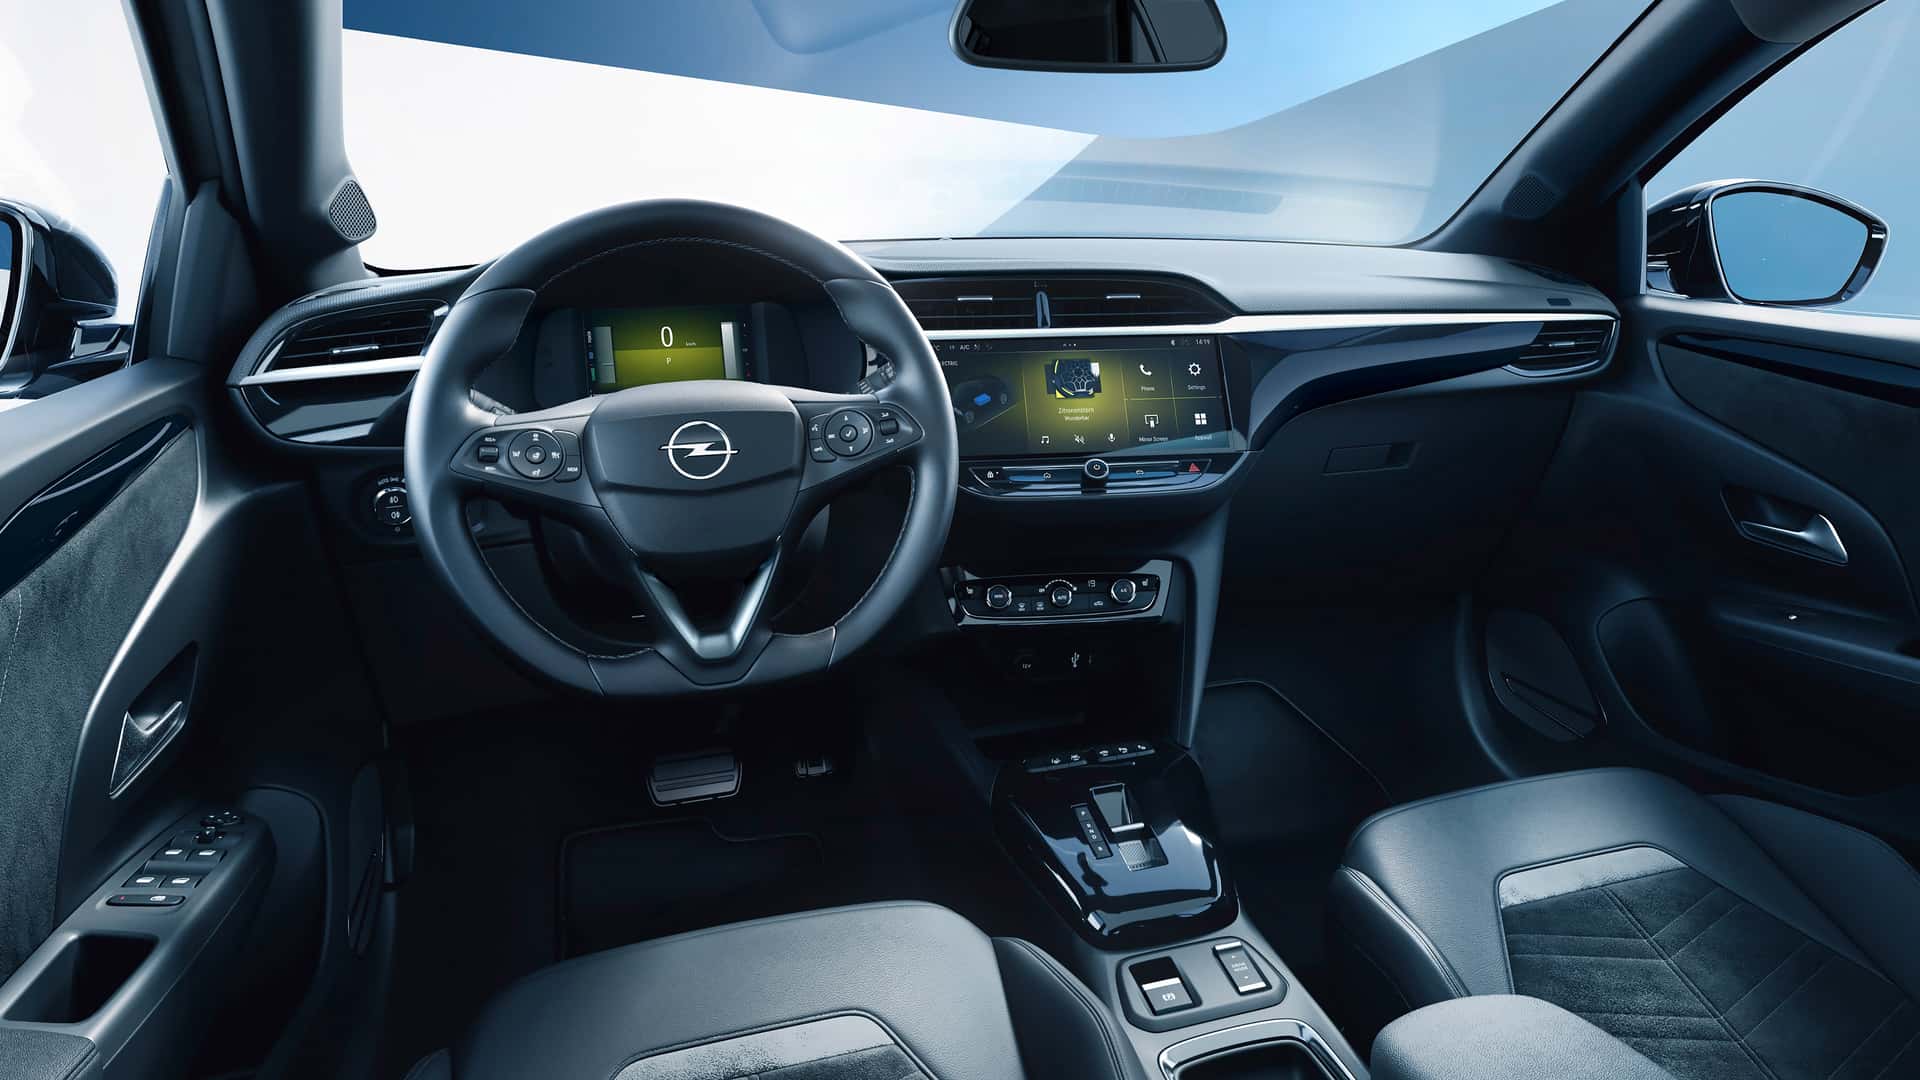 Компания Opel представила для рынка Европы хэтчбек Opel Corsa нового поколения